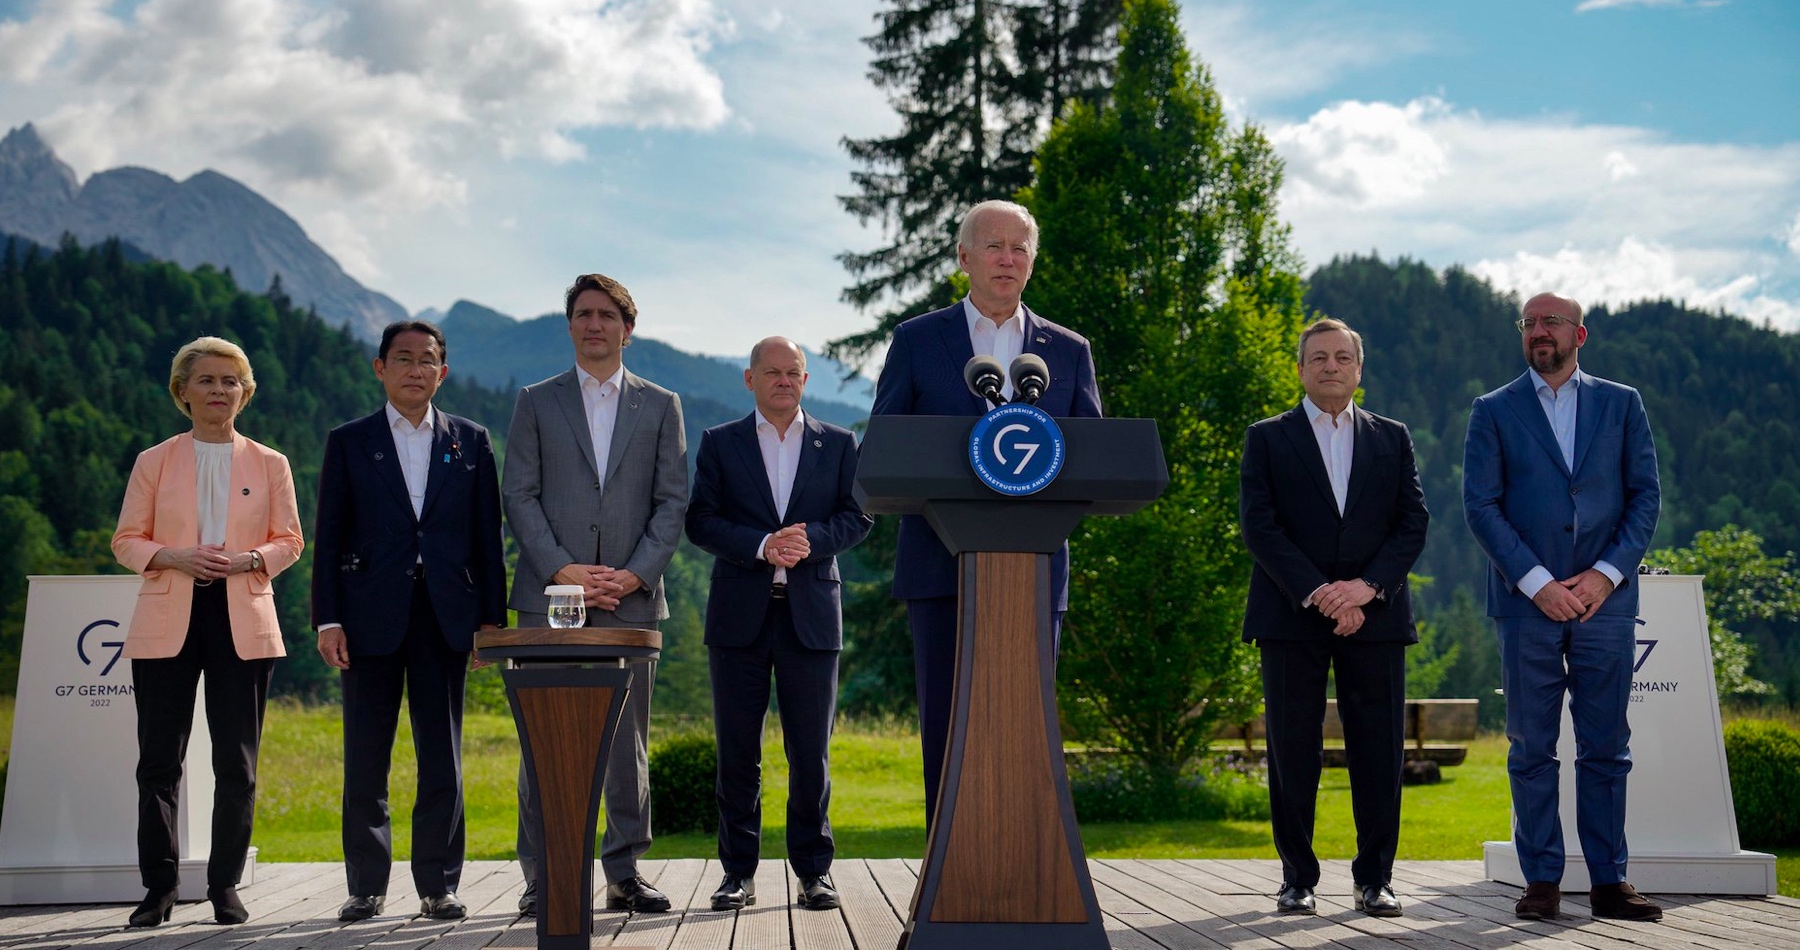 Skupina G7 sa desí strácajúceho ekonomického vplyvu vo svete a zúfalo nalieva miliardy dolárov do alternatívy čínskej hospodárskej iniciatívy „Jedno pásmo, jedna cesta“ - známej ako Nová hodvábna cesta. Neziskovska Oxfam už obvinila G7 zo zodpovednosti za vyvolávanie hladomoru vo svete, zatiaľčo korporácie zarábajú brutálne peniaze